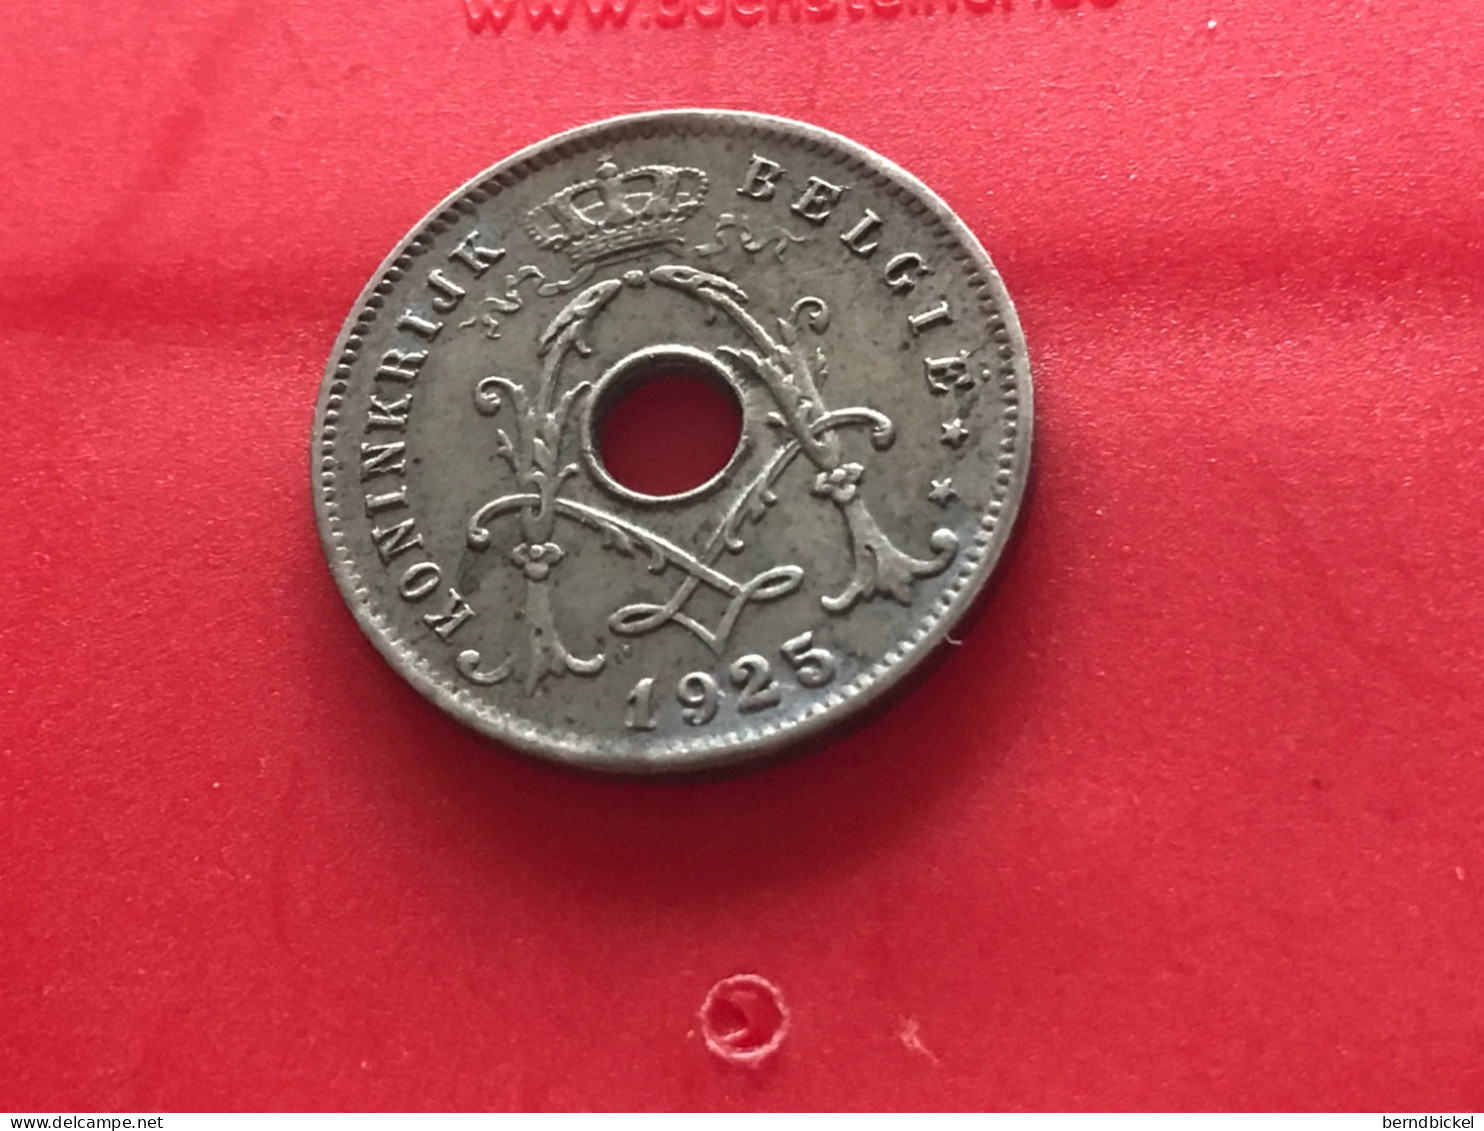 Münze Münzen Umlaufmünze Belgien 5 Centimes 1925 Belgie - 10 Centimes